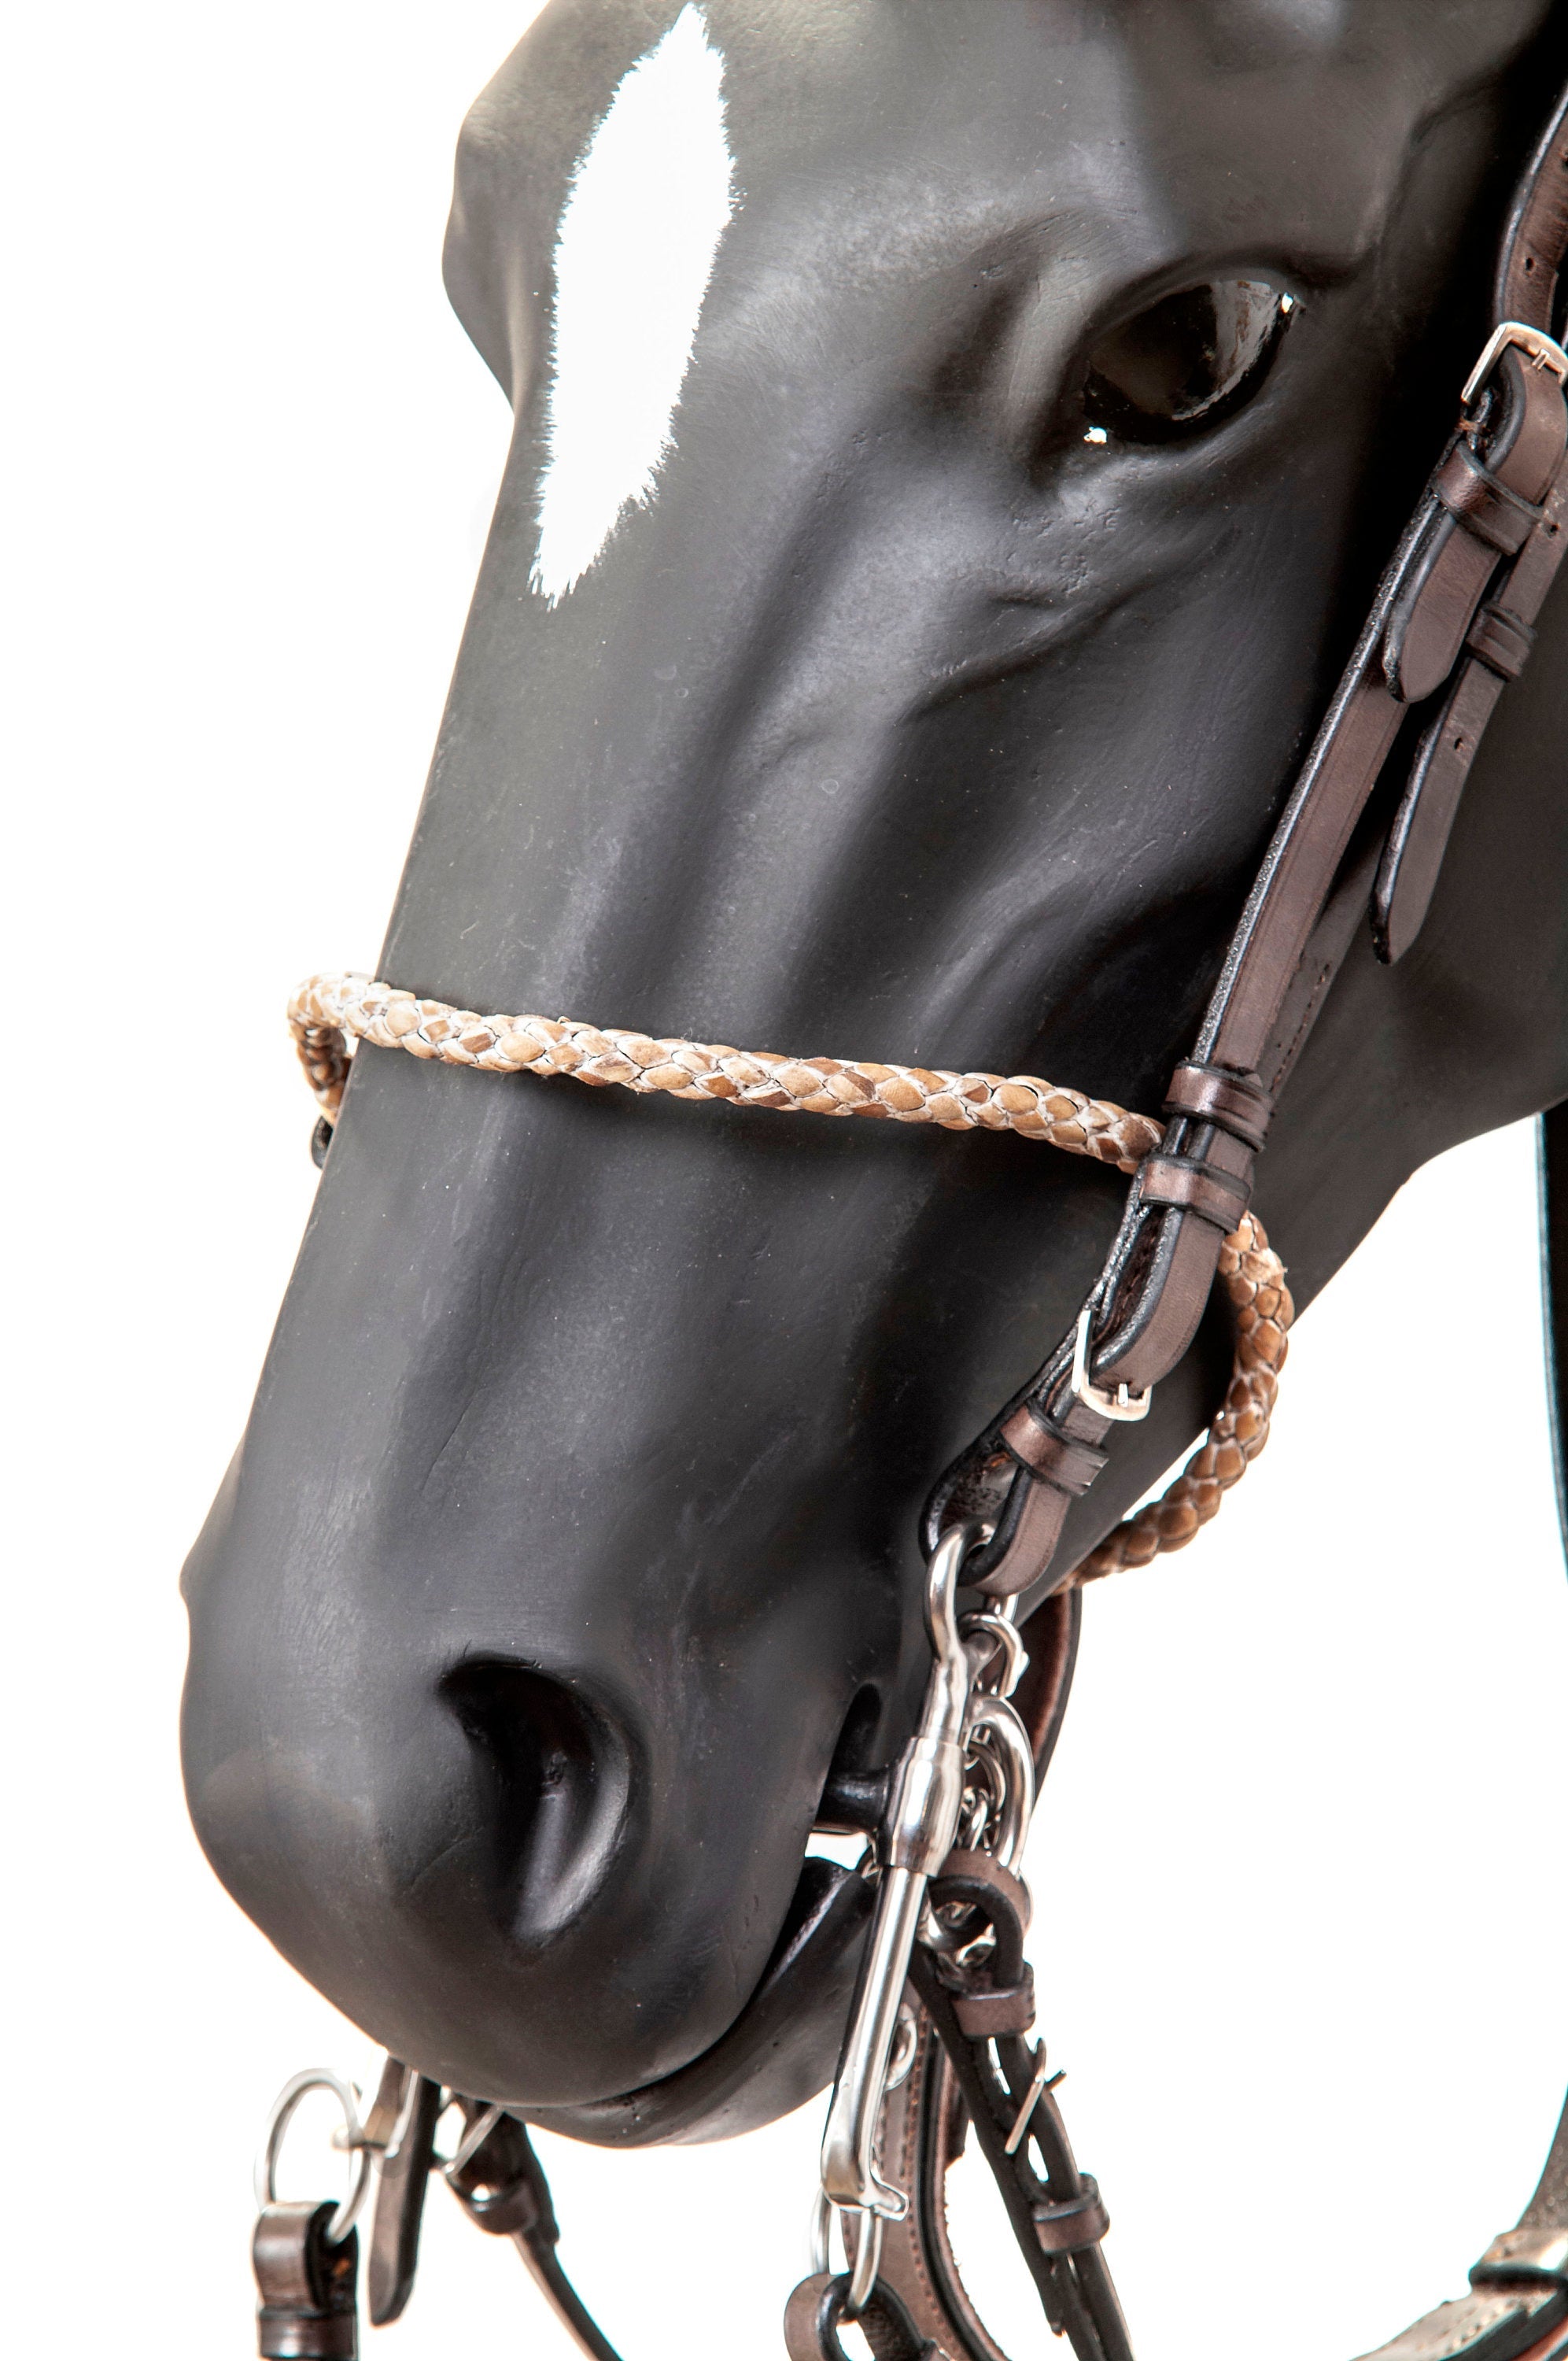 Gaucholife Horse Equipment Premium Leather Pelham Polo Bridle Set